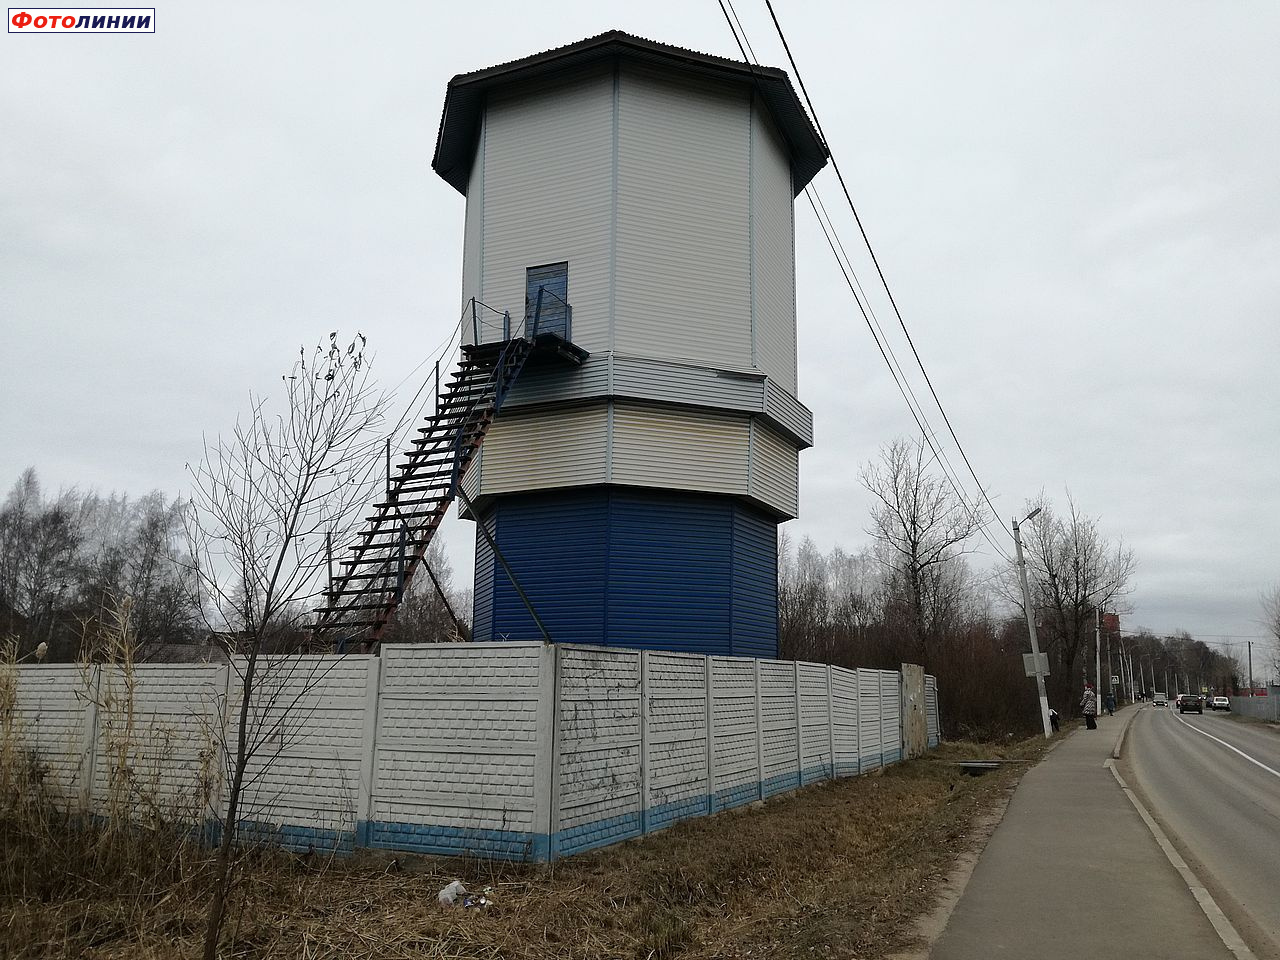 Водонапорная башня со стороны населённого пункта